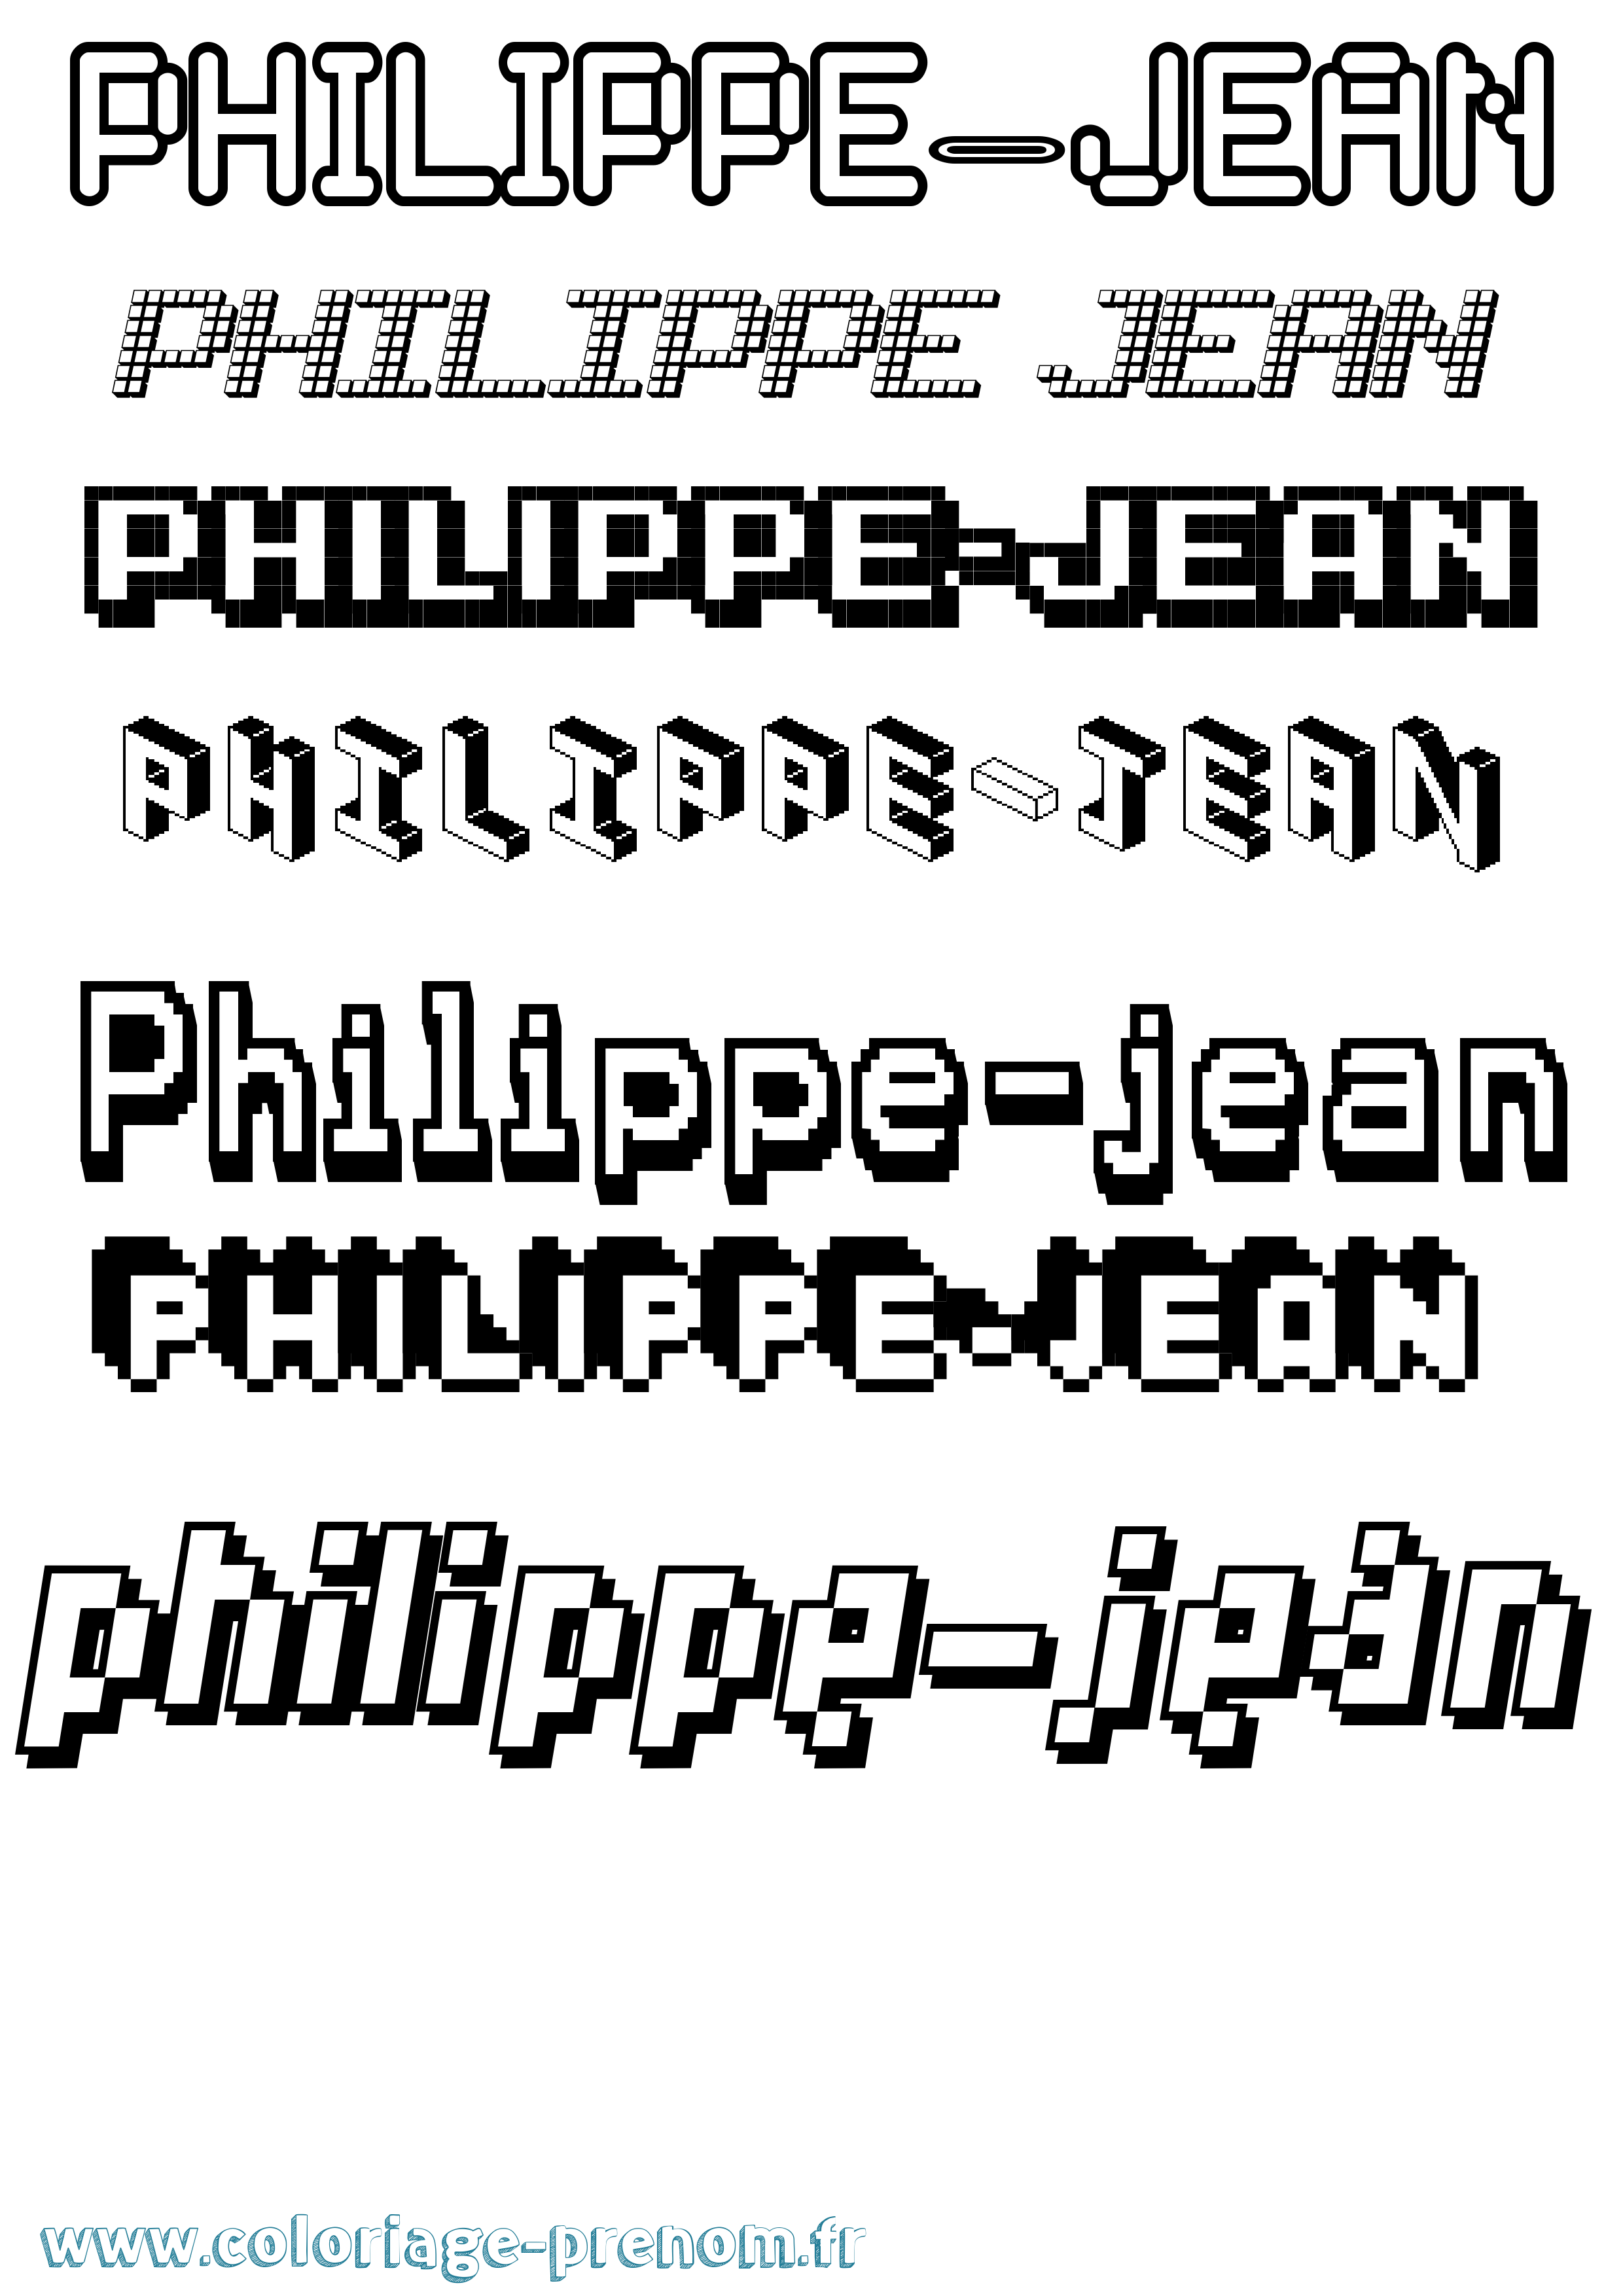 Coloriage prénom Philippe-Jean Pixel